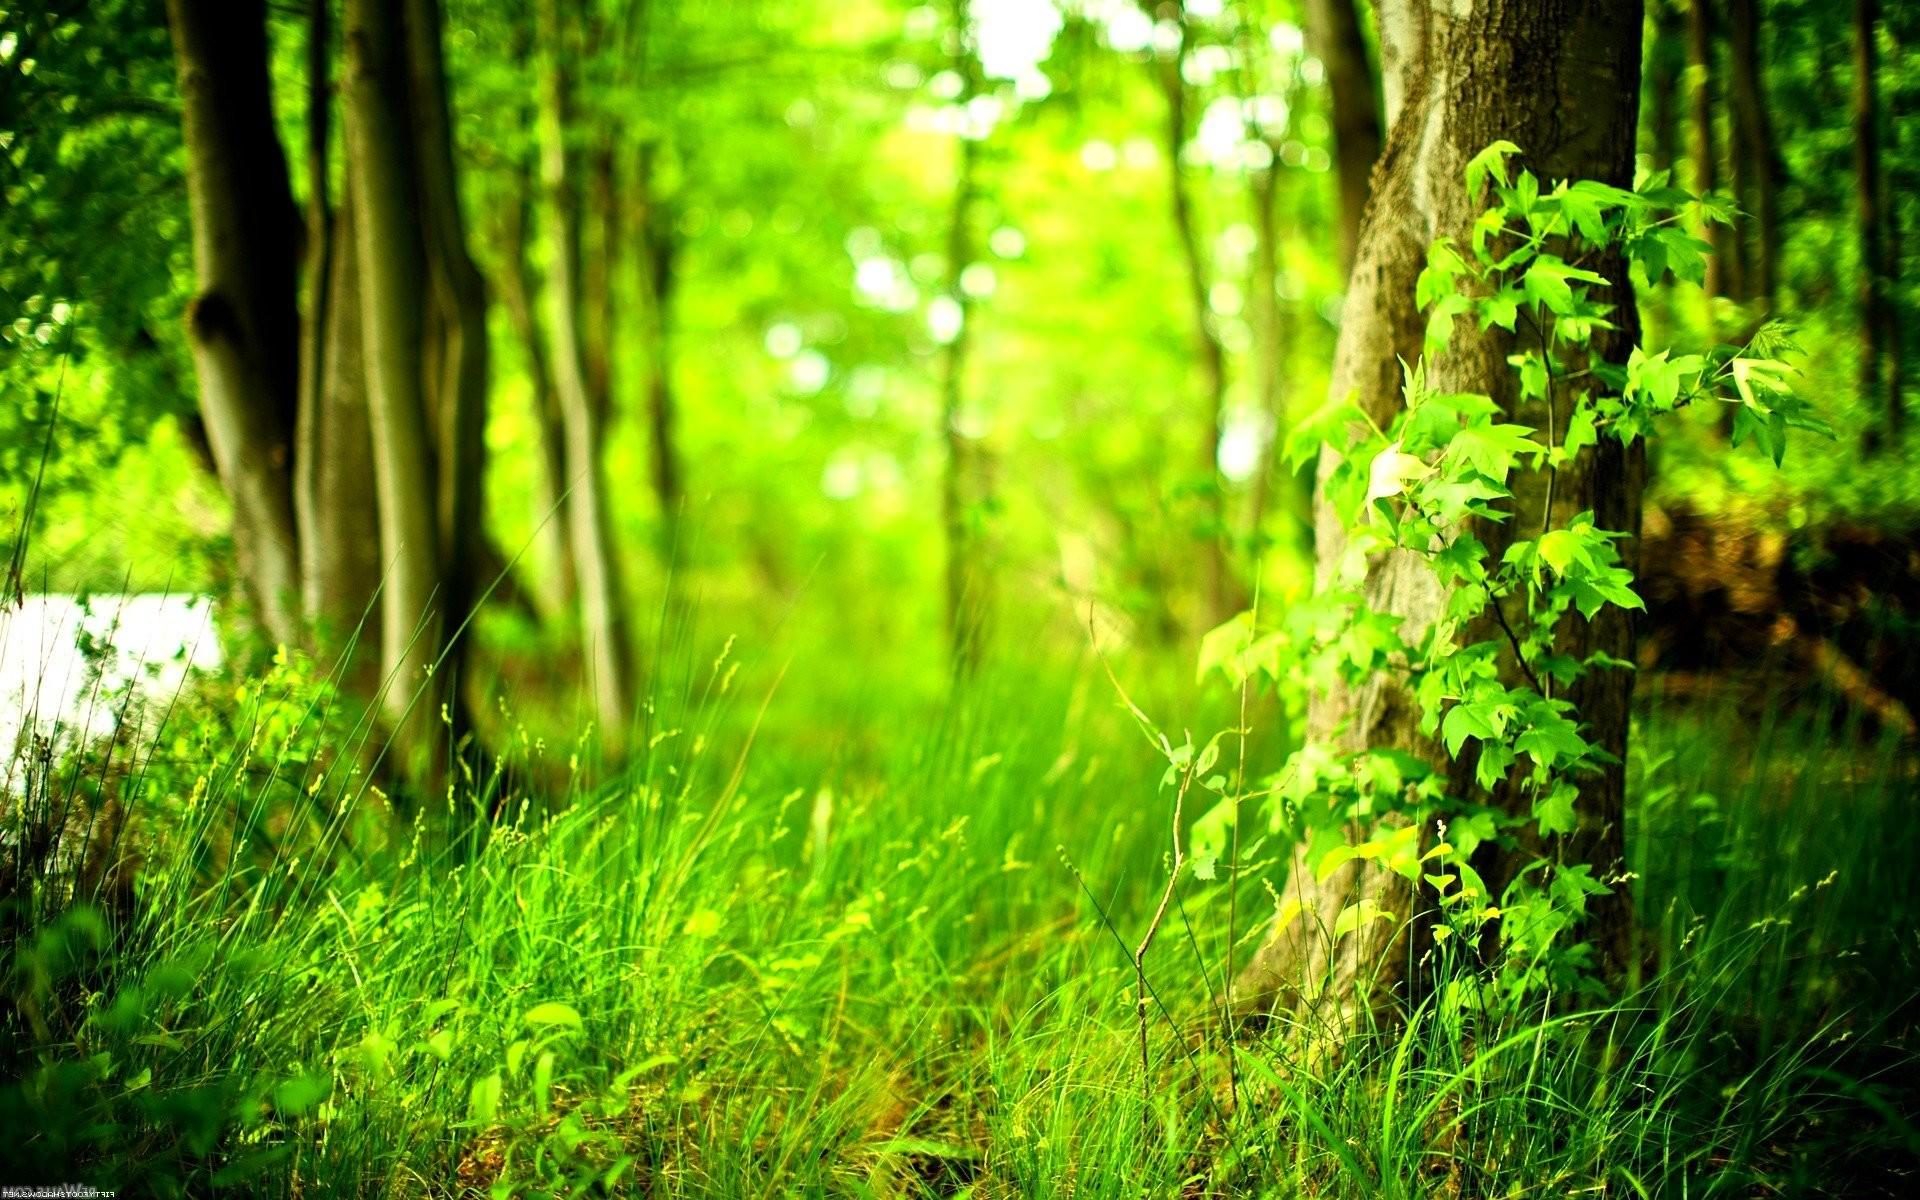 Hãy chiêm ngưỡng vẻ đẹp thiên nhiên được tái hiện sinh động qua hình ảnh của một cây xanh tươi tắn, với những chiếc lá xanh mướt và ngọn cây cao thẳng. Bức tranh sẽ mang lại cho bạn cảm giác bình yên và thư giãn cuối ngày.